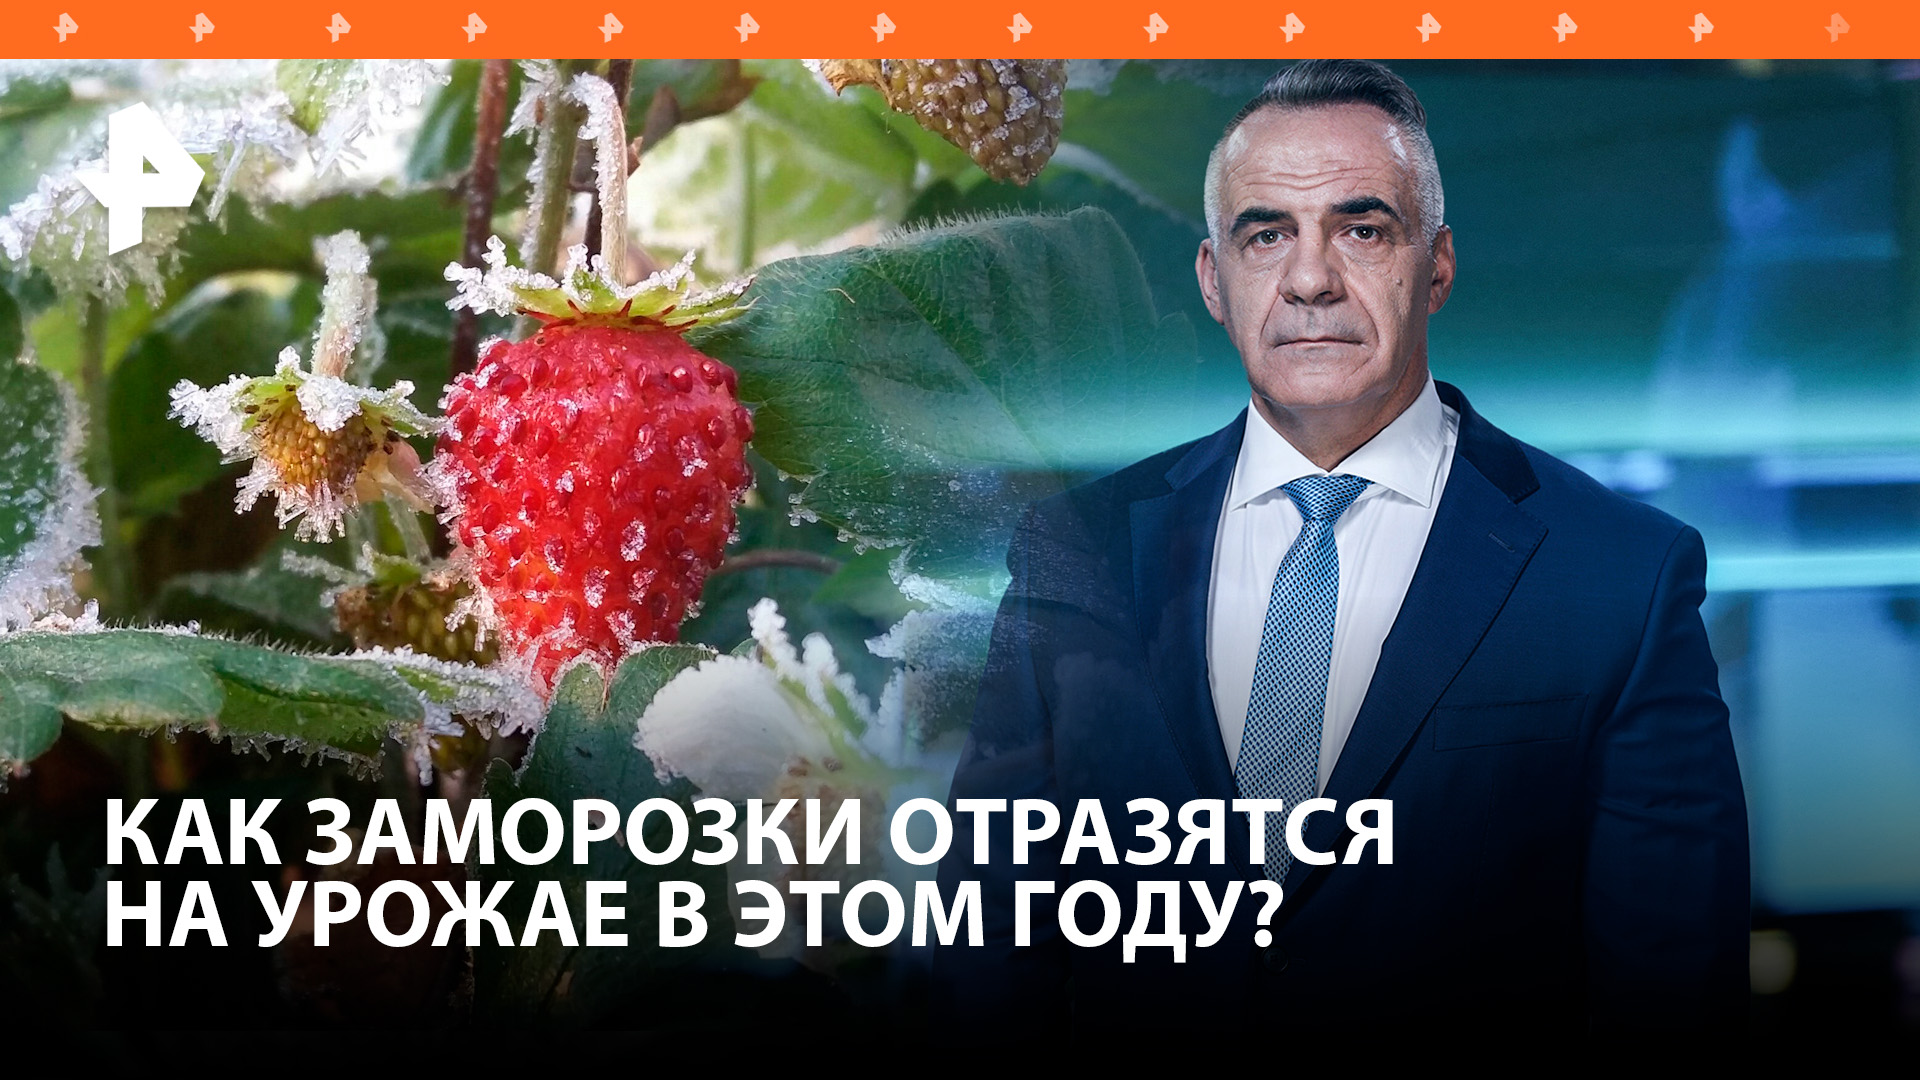 Урожай "сгорел": как продавцы спекулируют на ценах на ягоды / ИТОГИ НЕДЕЛИ с Петром Марченко